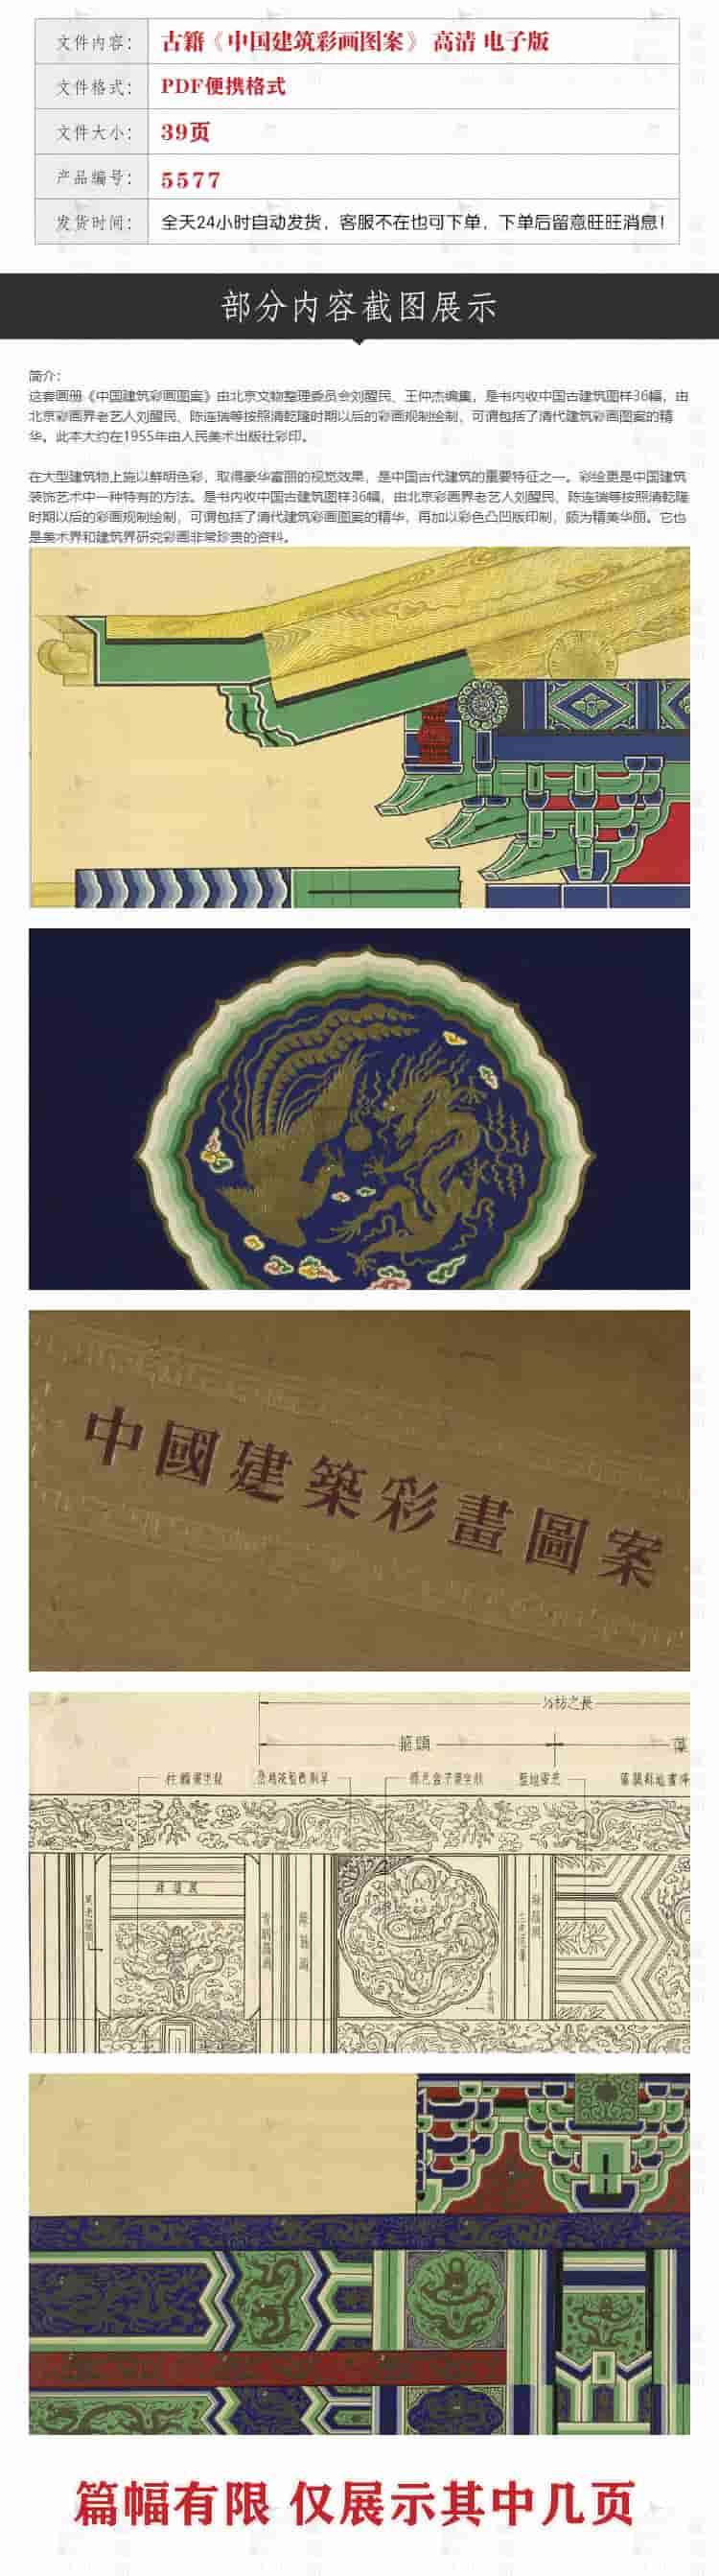 中国建筑彩画图案 古籍古本图谱画谱高清图库素材PDF电子版5577